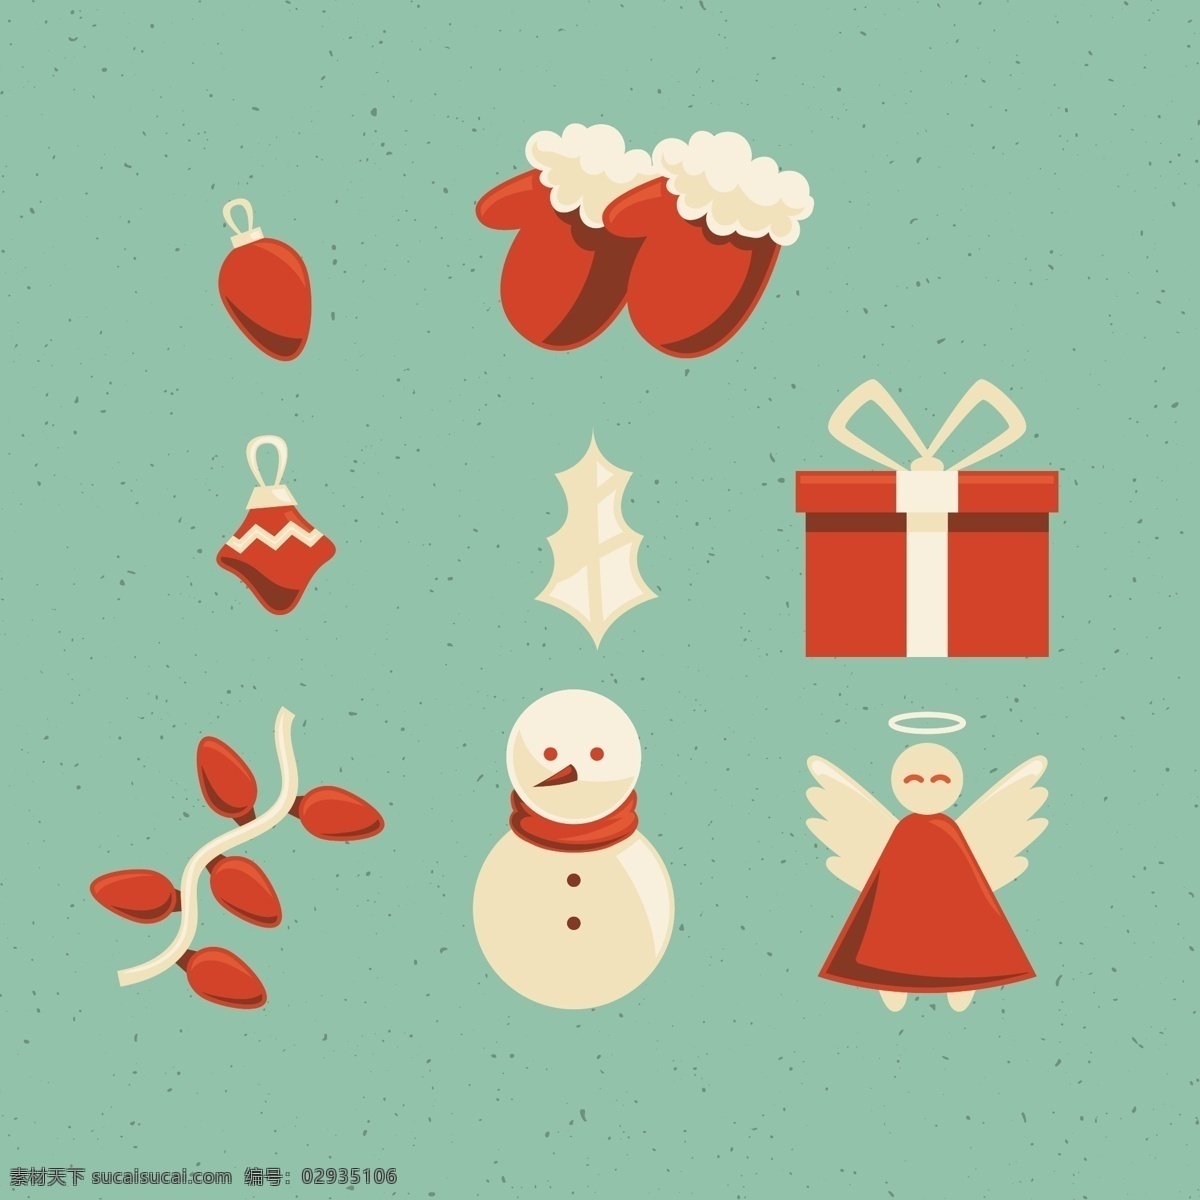 古典 红色 平安夜 圣诞 装饰 元素 复古 手套 雪人 天使 礼物 礼品盒 灯泡 红灯泡 灯串 装饰物 平安夜元素